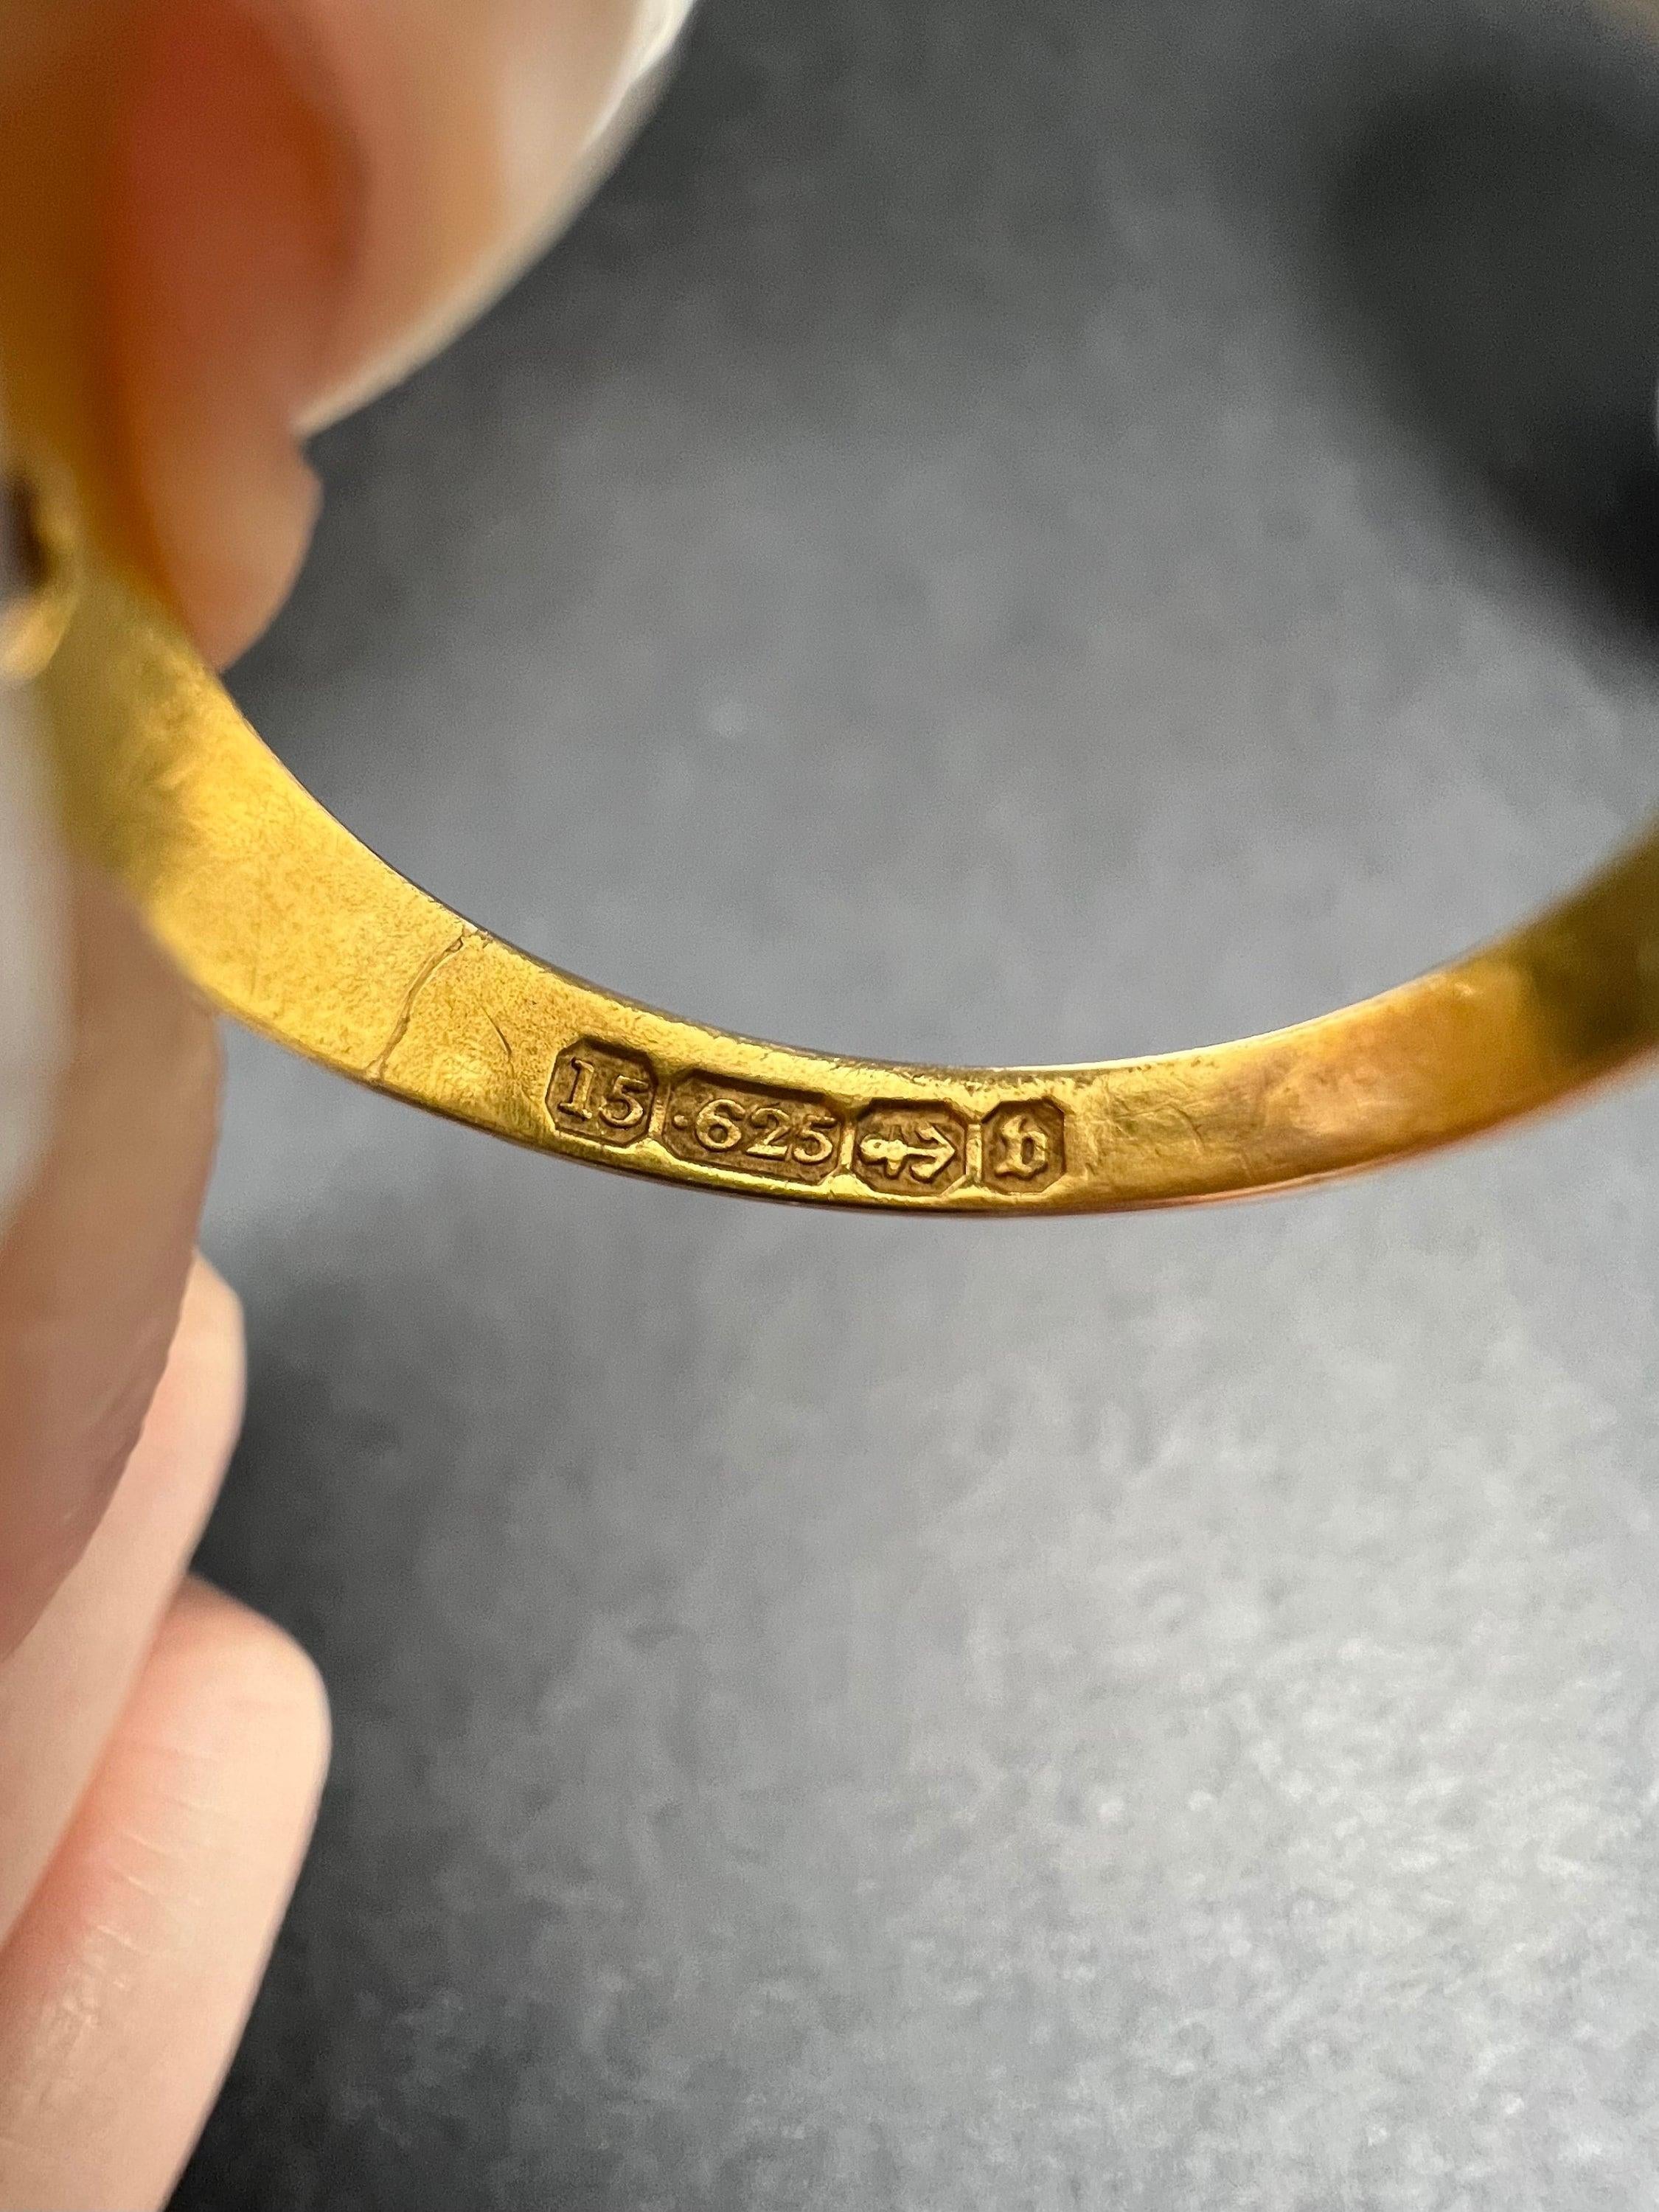 Antiker Ring

15ct Gold gestempelt

Gepunzt Birmingham 1876

Dieser exquisite antike Ring aus der viktorianischen Zeit ist ein wahrer Schatz für jeden Schmucksammler. Dieser Ring aus 15-karätigem Gelbgold besticht durch sein atemberaubendes Design